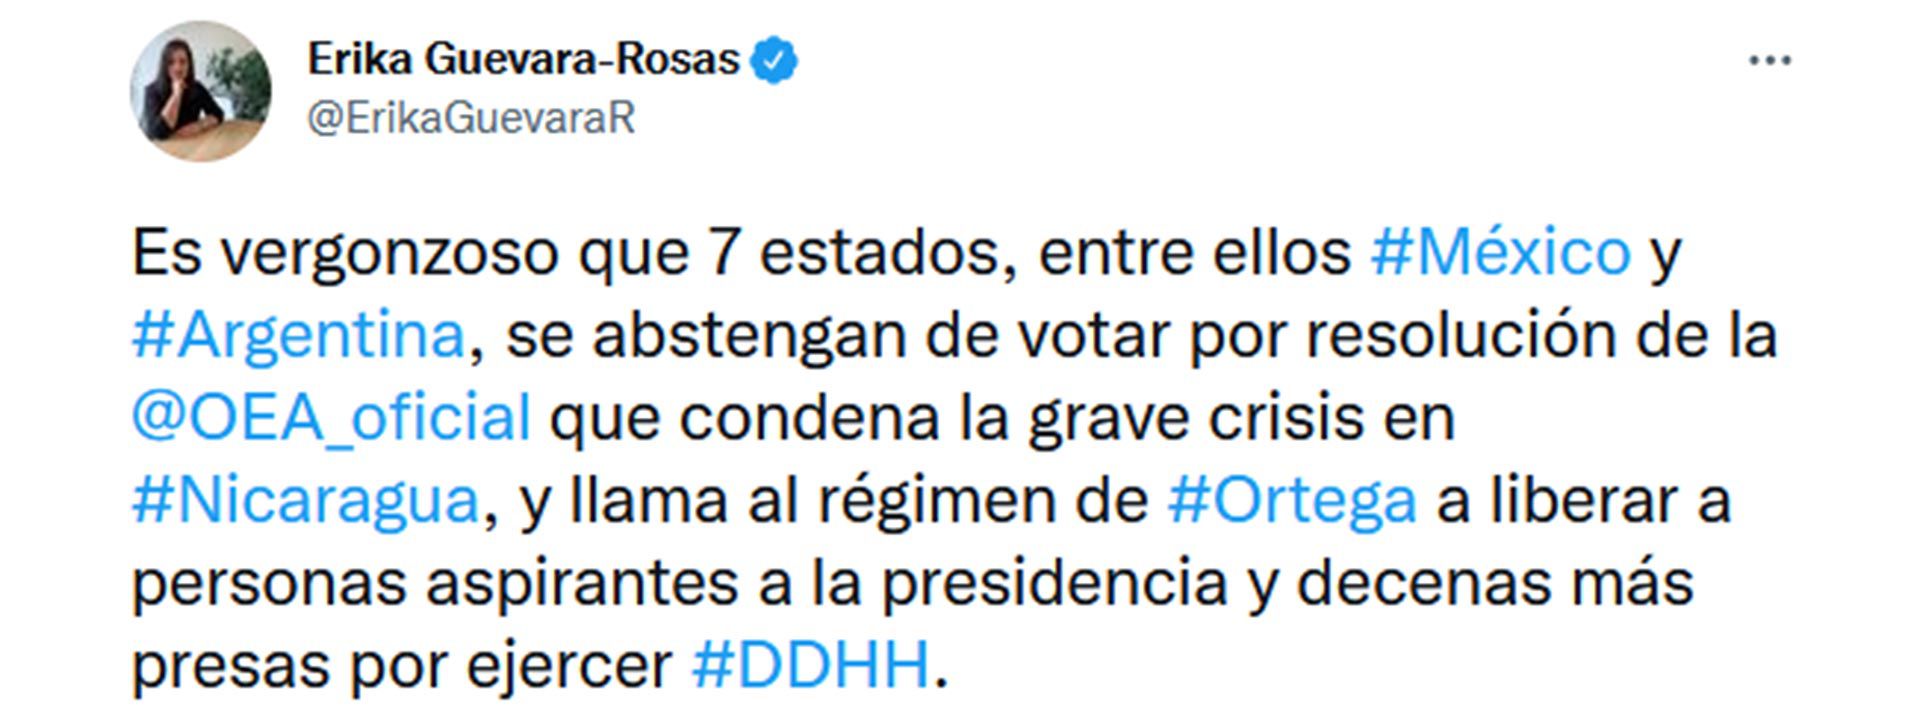 Tuit de la directora de Aministia Internacional sobre voto en Nicaragüa
R